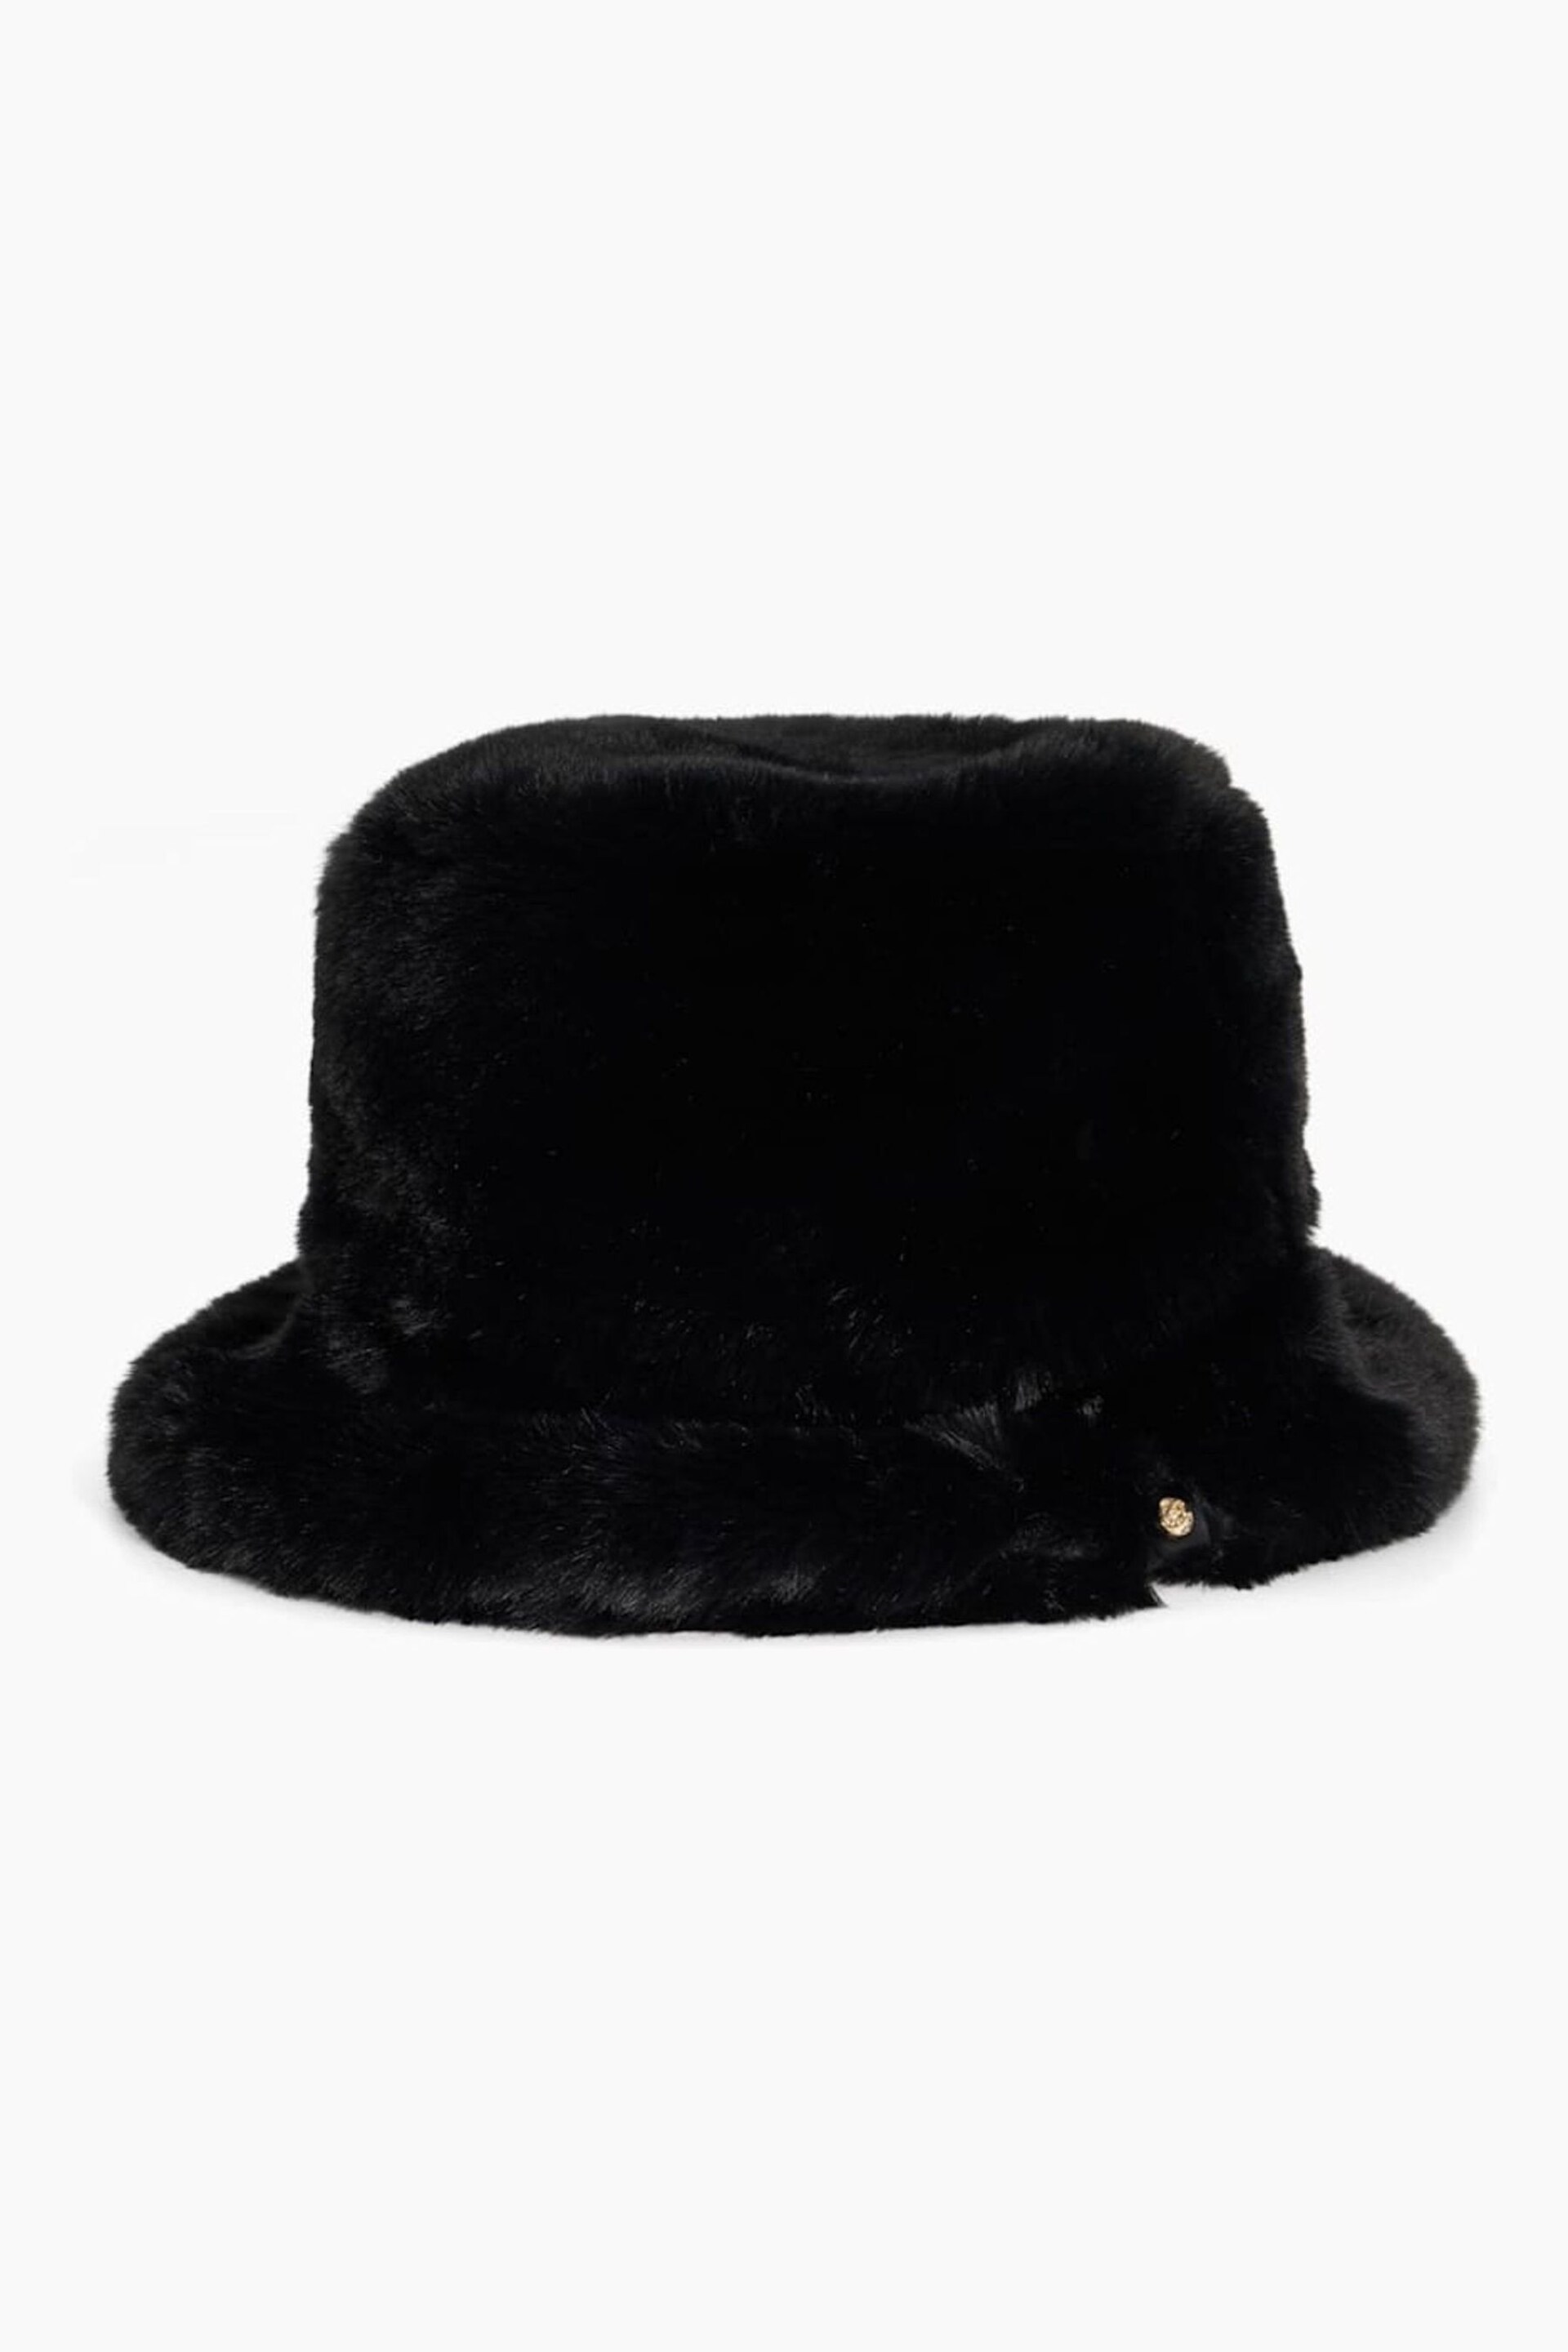 Dune London Black Furries Faux Fur Bucket Hat - Image 1 of 1